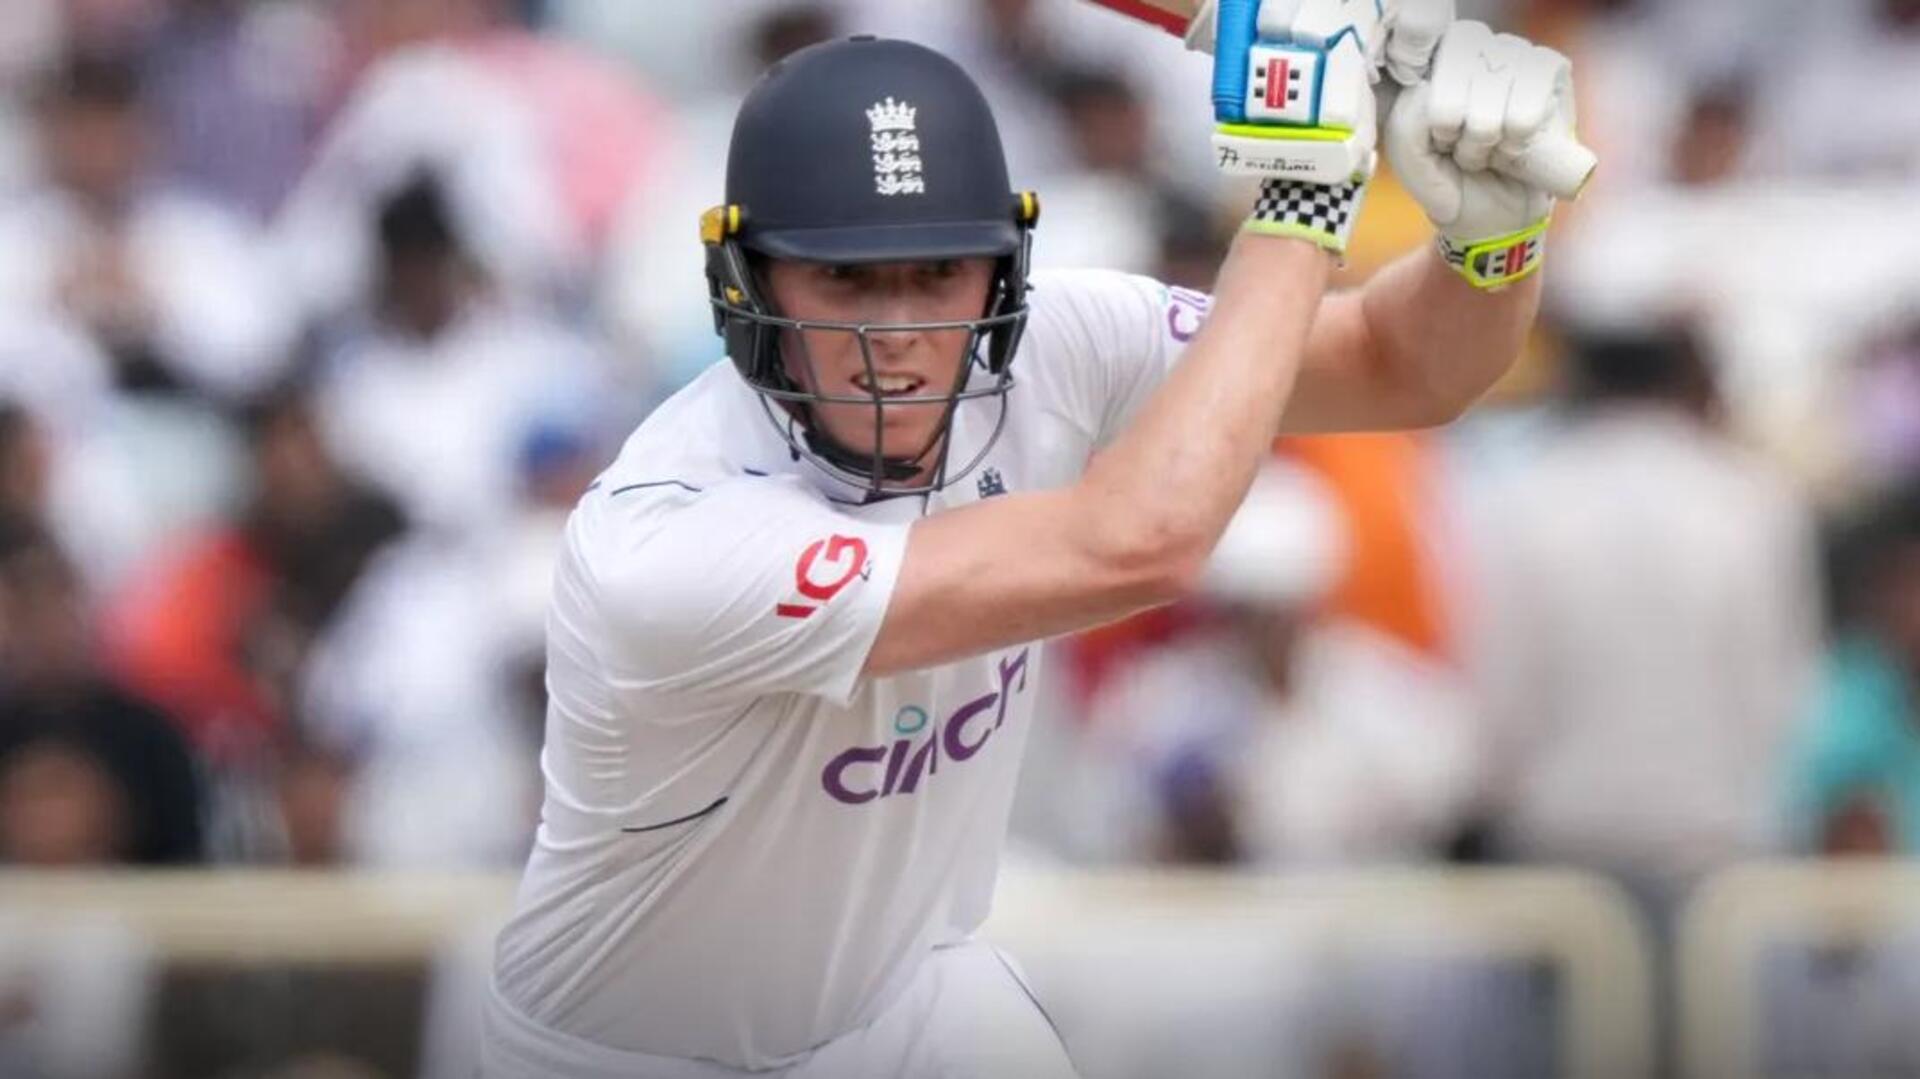 भारत बनाम इंग्लैंड: जैक क्रॉली ने बनाया टेस्ट सीरीज का तीसरा अर्धशतक, 2,500 रन भी पूरे